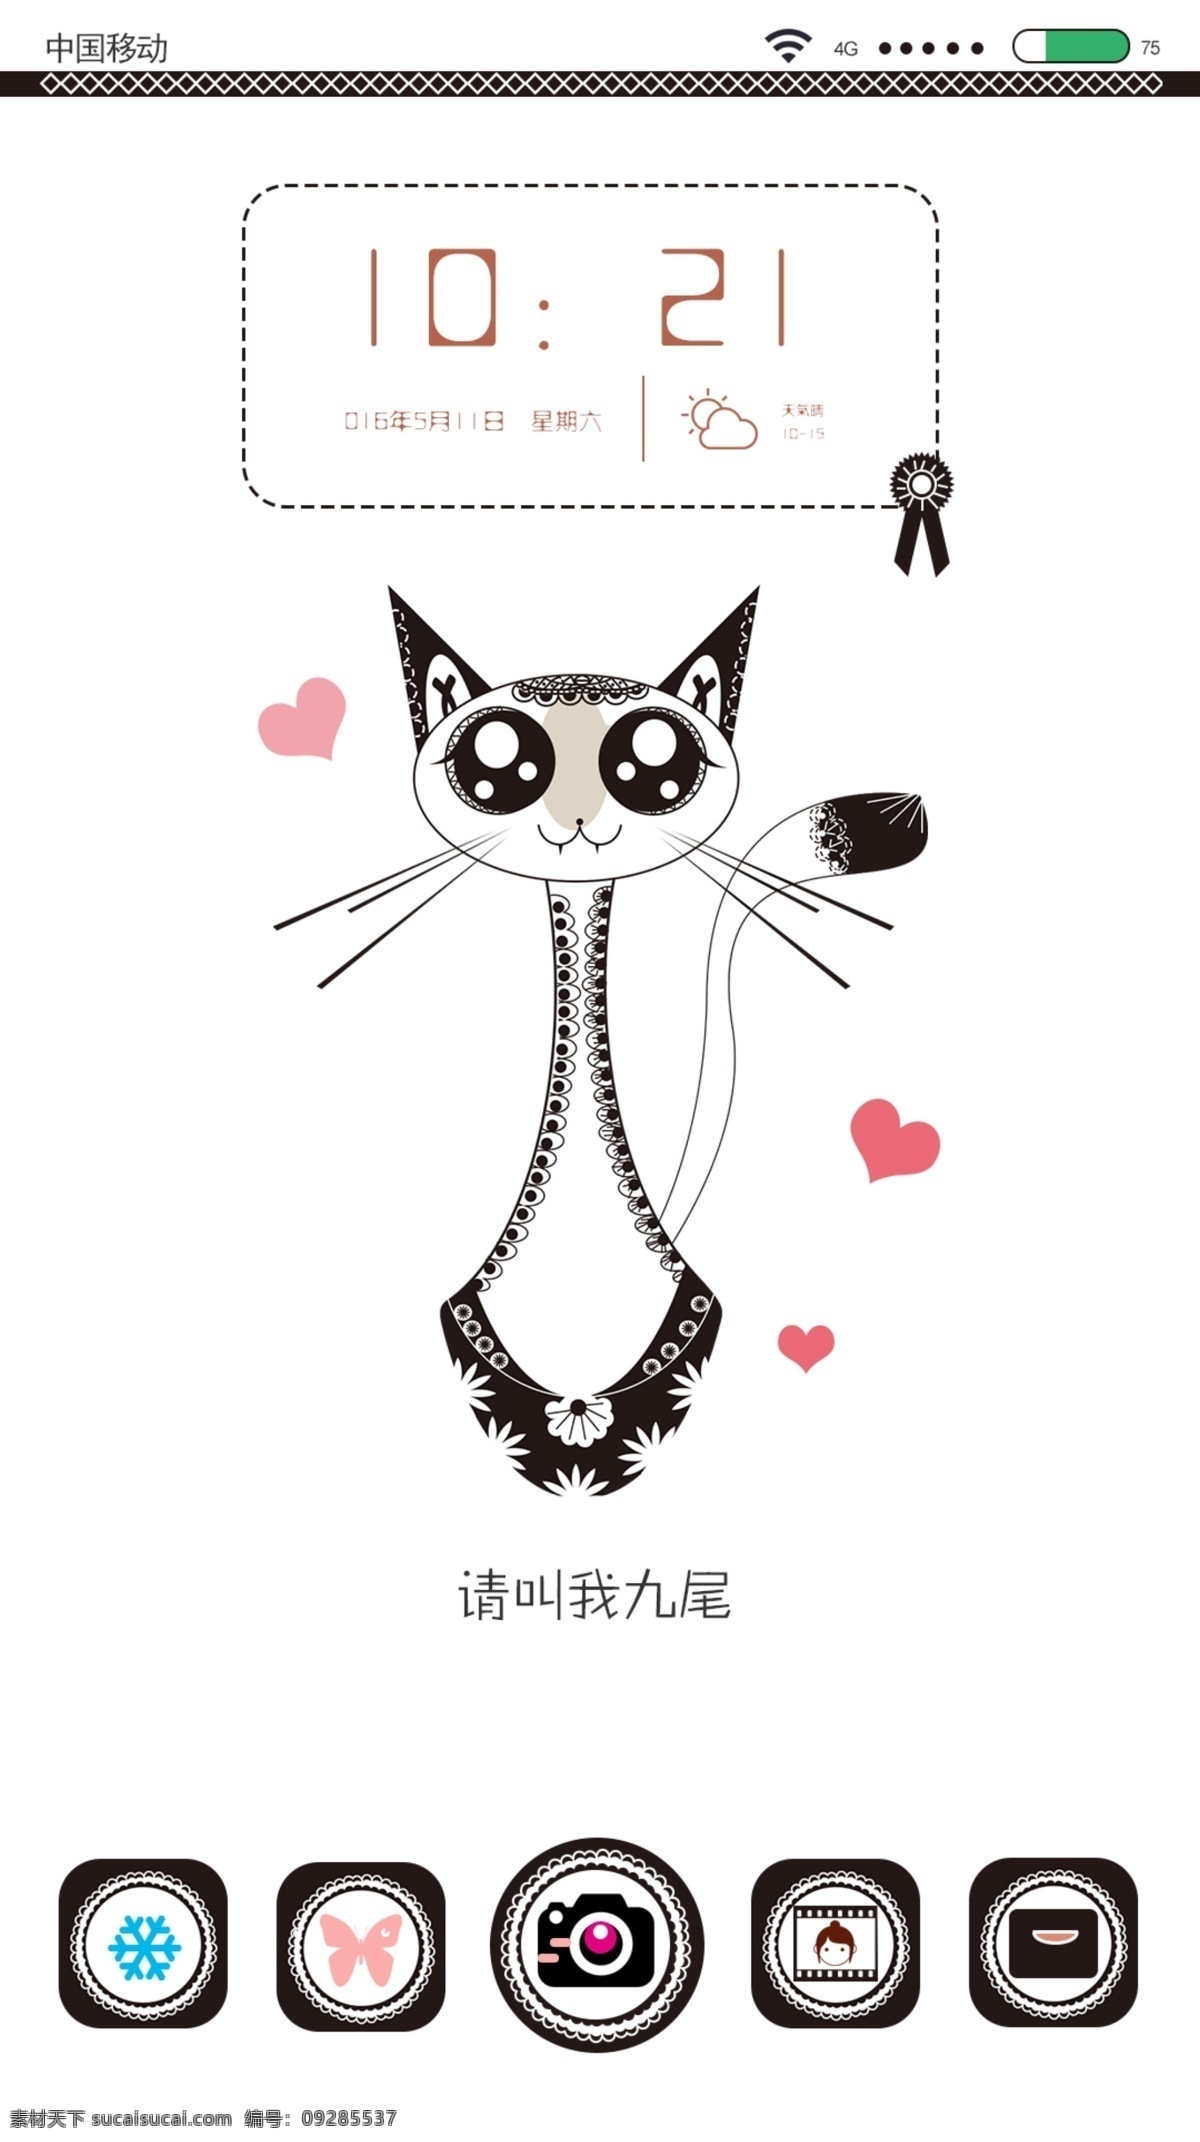 手机 蕾丝 猫咪 壁纸 主体 页面 可爱 精致 小清新 手机主题页面 主题设计 卡通猫咪 卡爱主题 卡通主题 暹罗猫